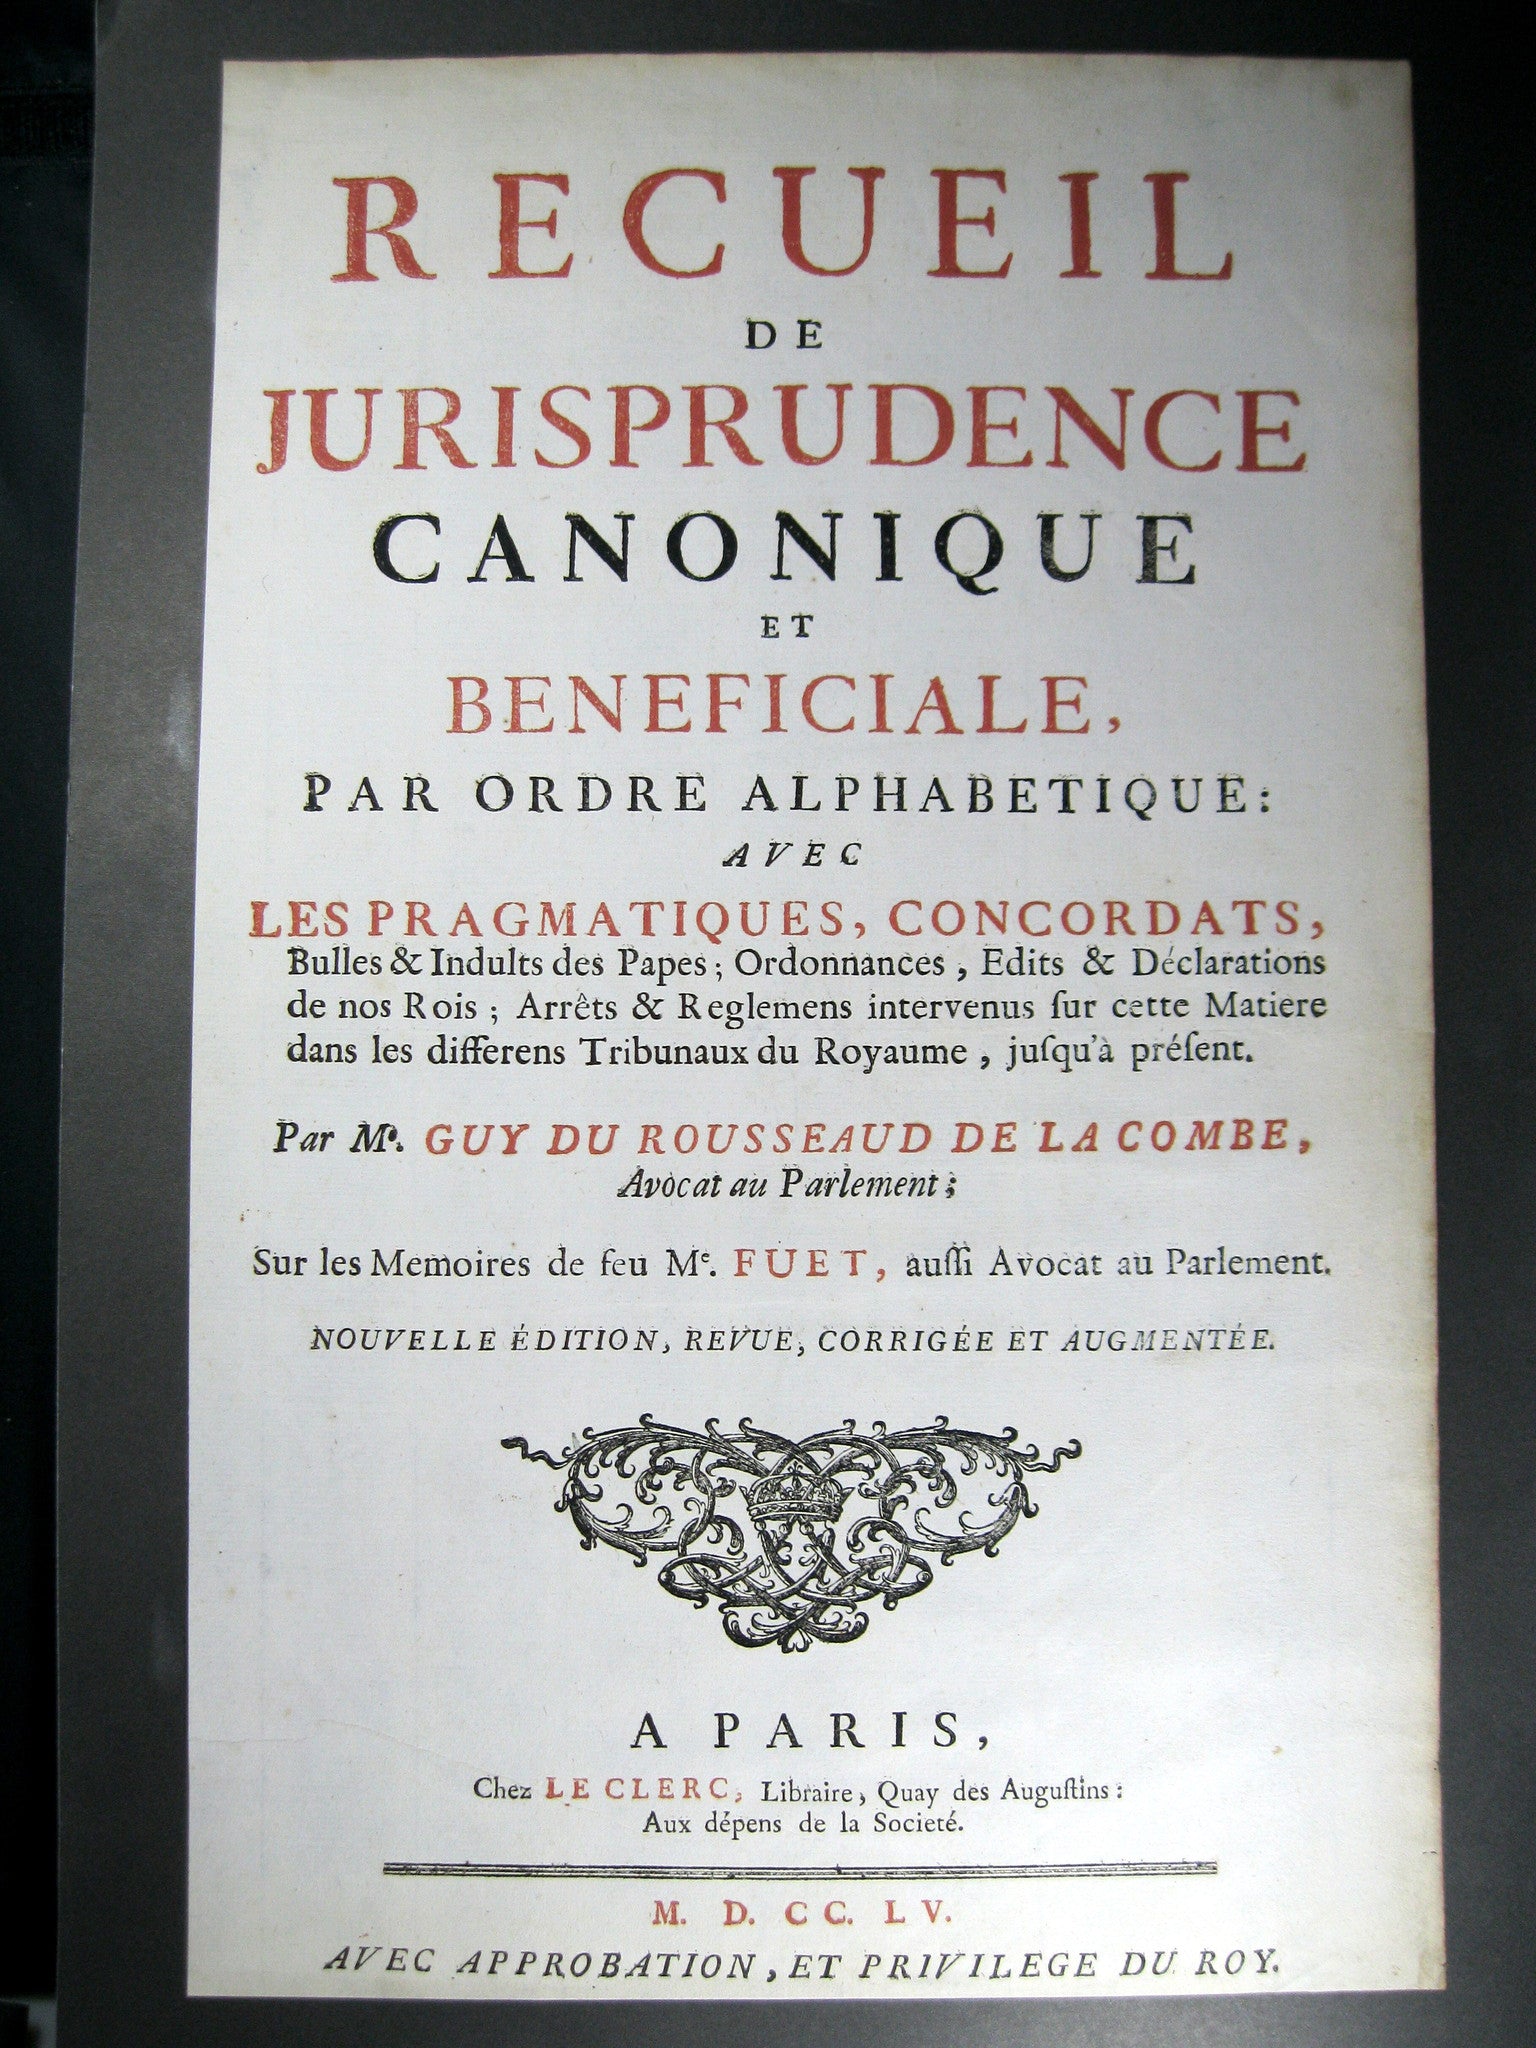 Page titre d'un livre 1755 (publicité?)